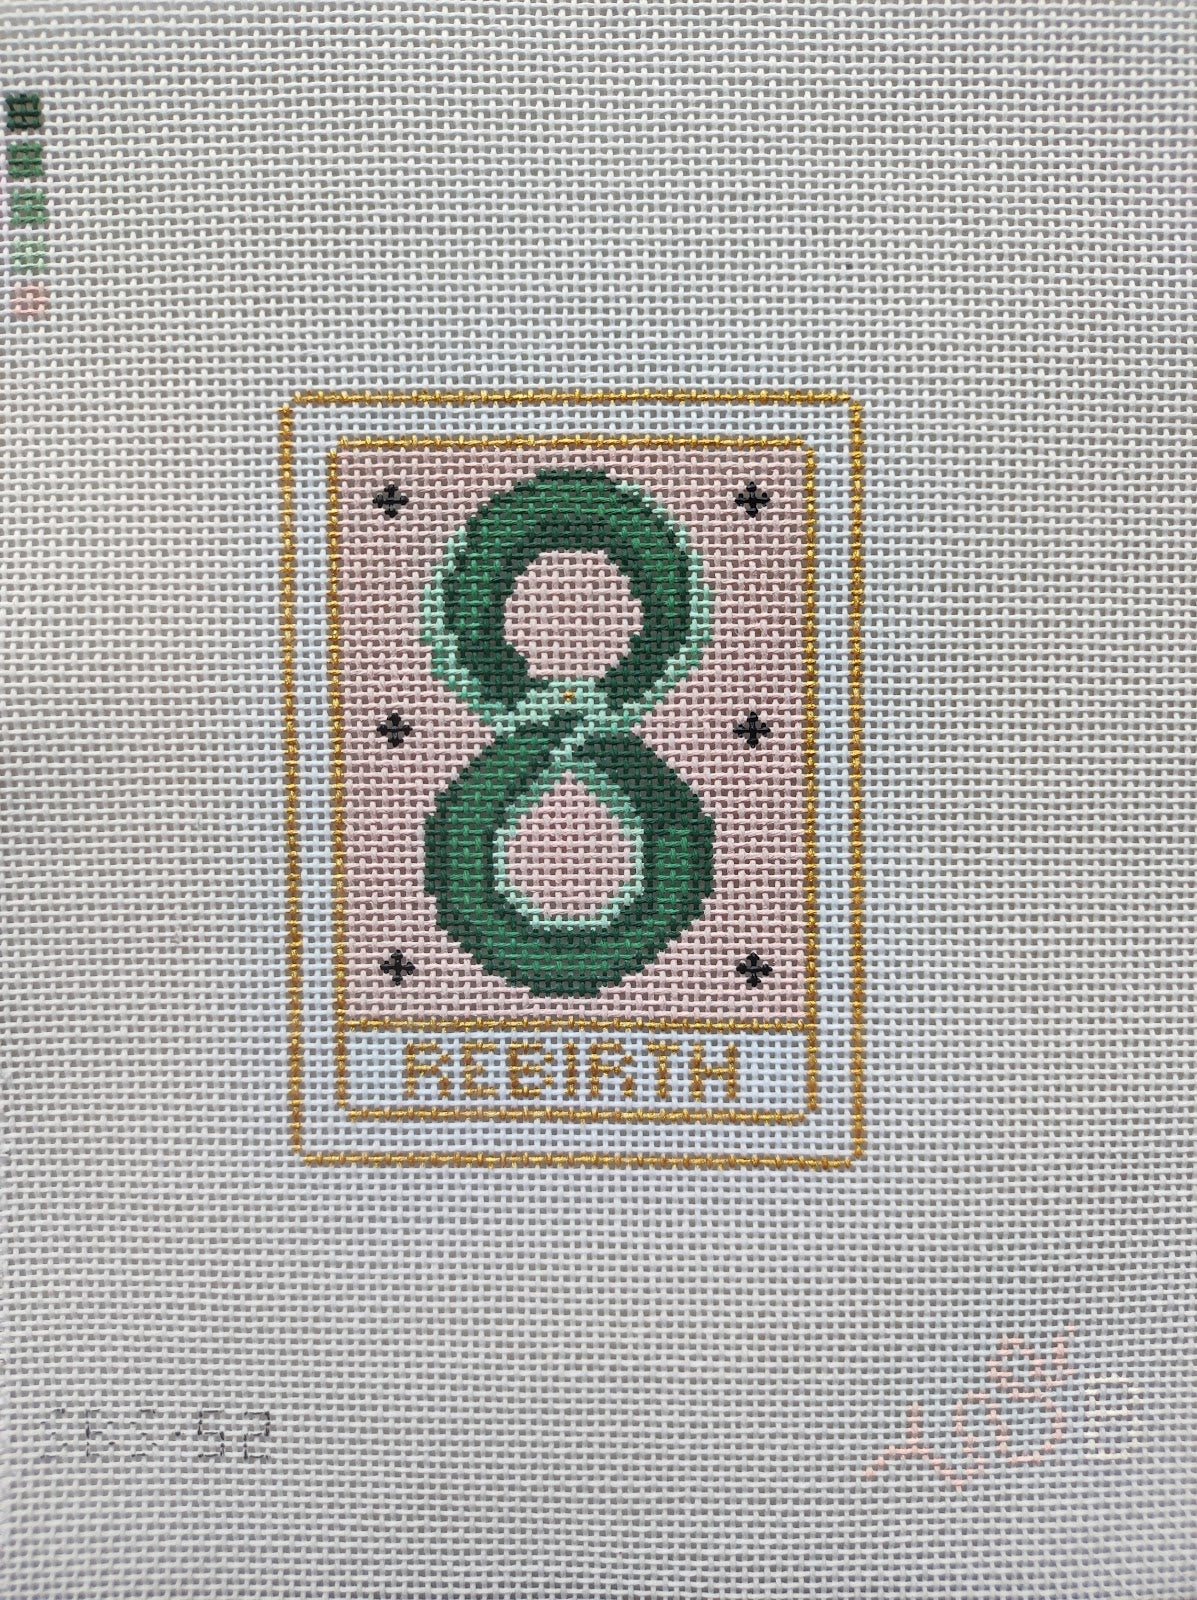 SBS52 - Tarot Rebirth